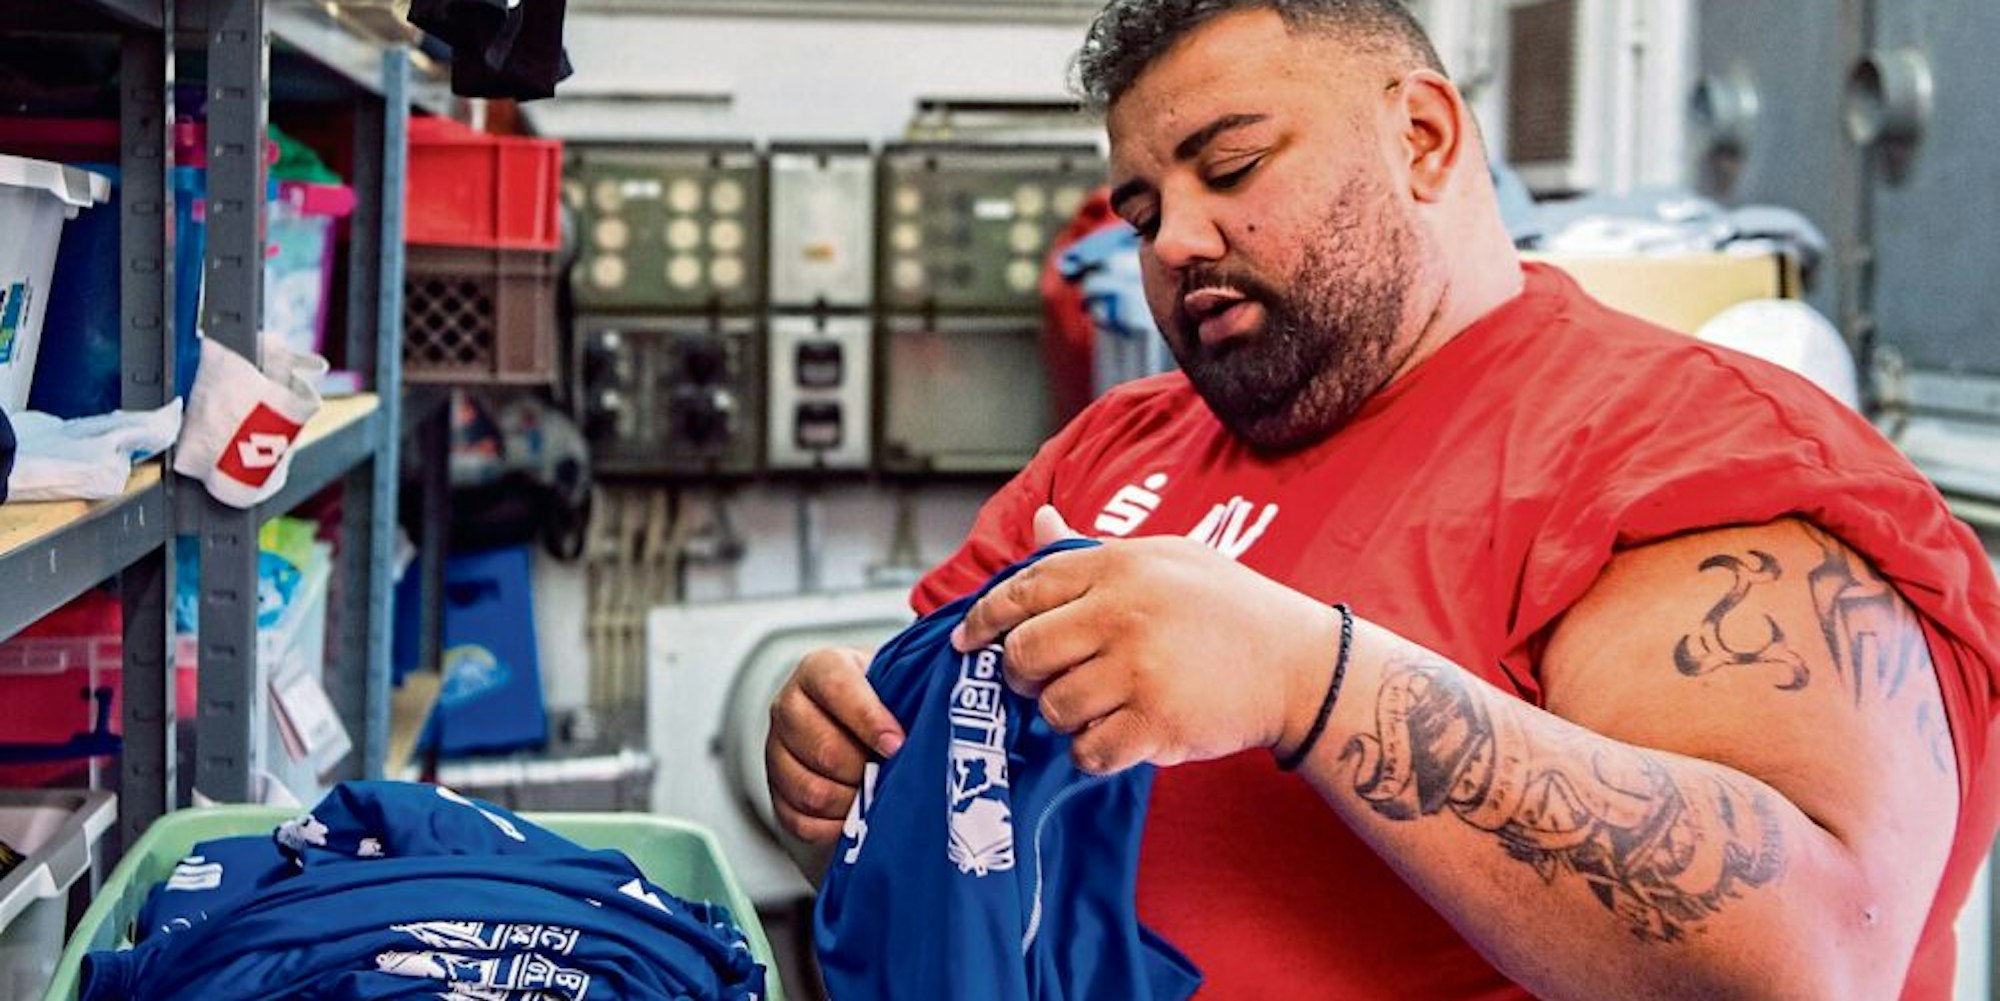 BSC-Teambetreuer Marcello Volk kümmert sich um die schmutzige Wäsche des Vereins. Und faltet die saubere.